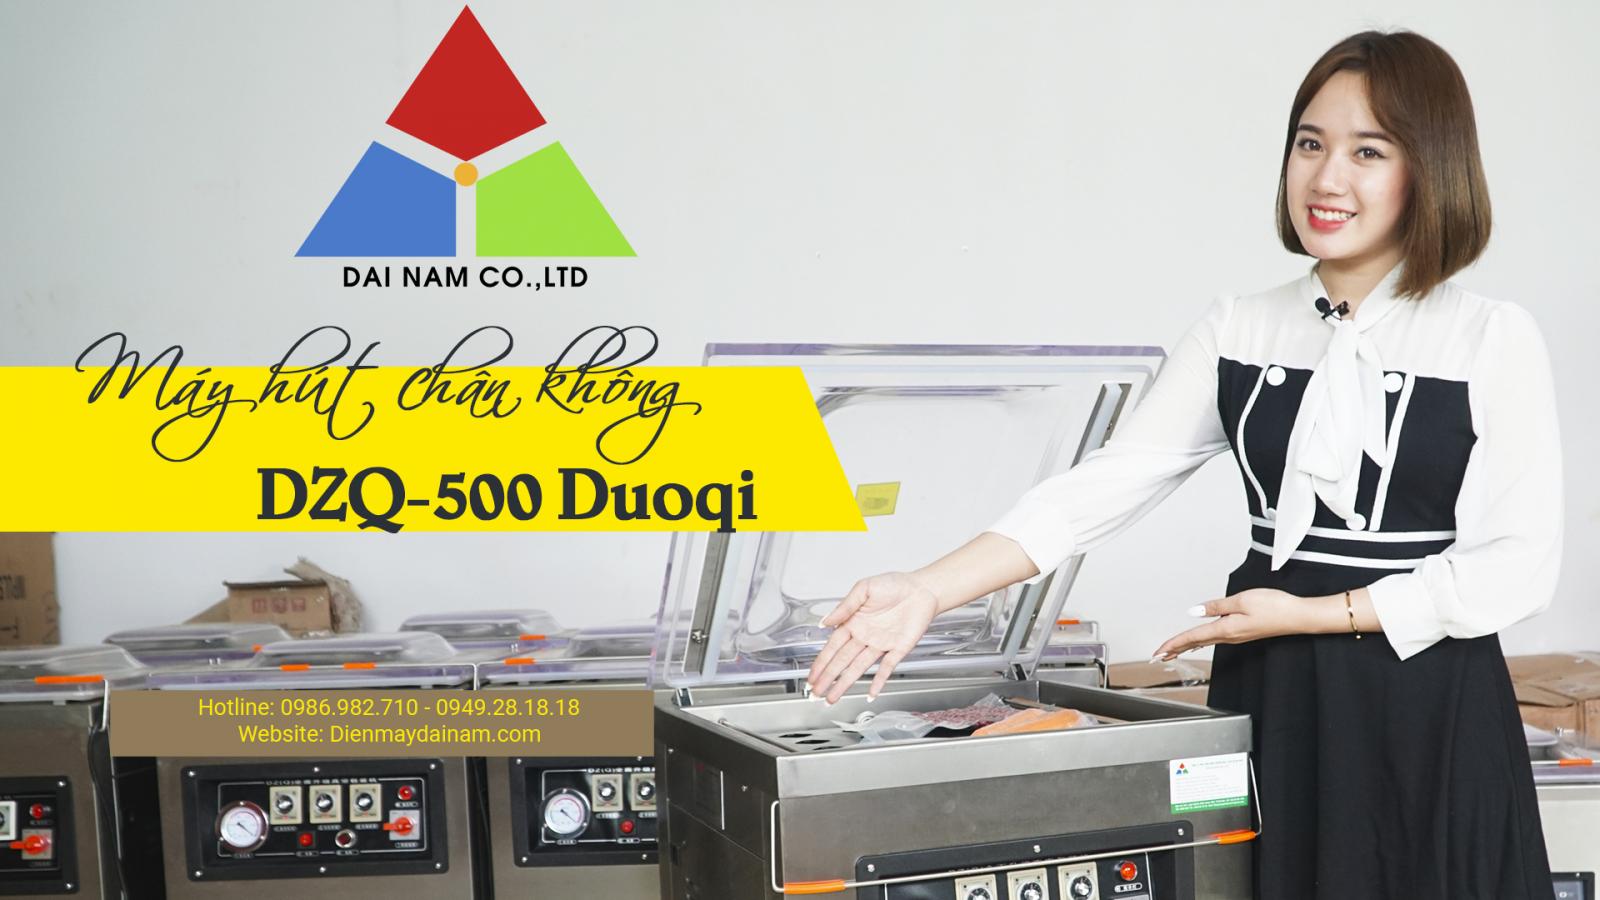 địa chỉ cung cấp dòng máy hút chân không dzq500 duoqi chính hãng